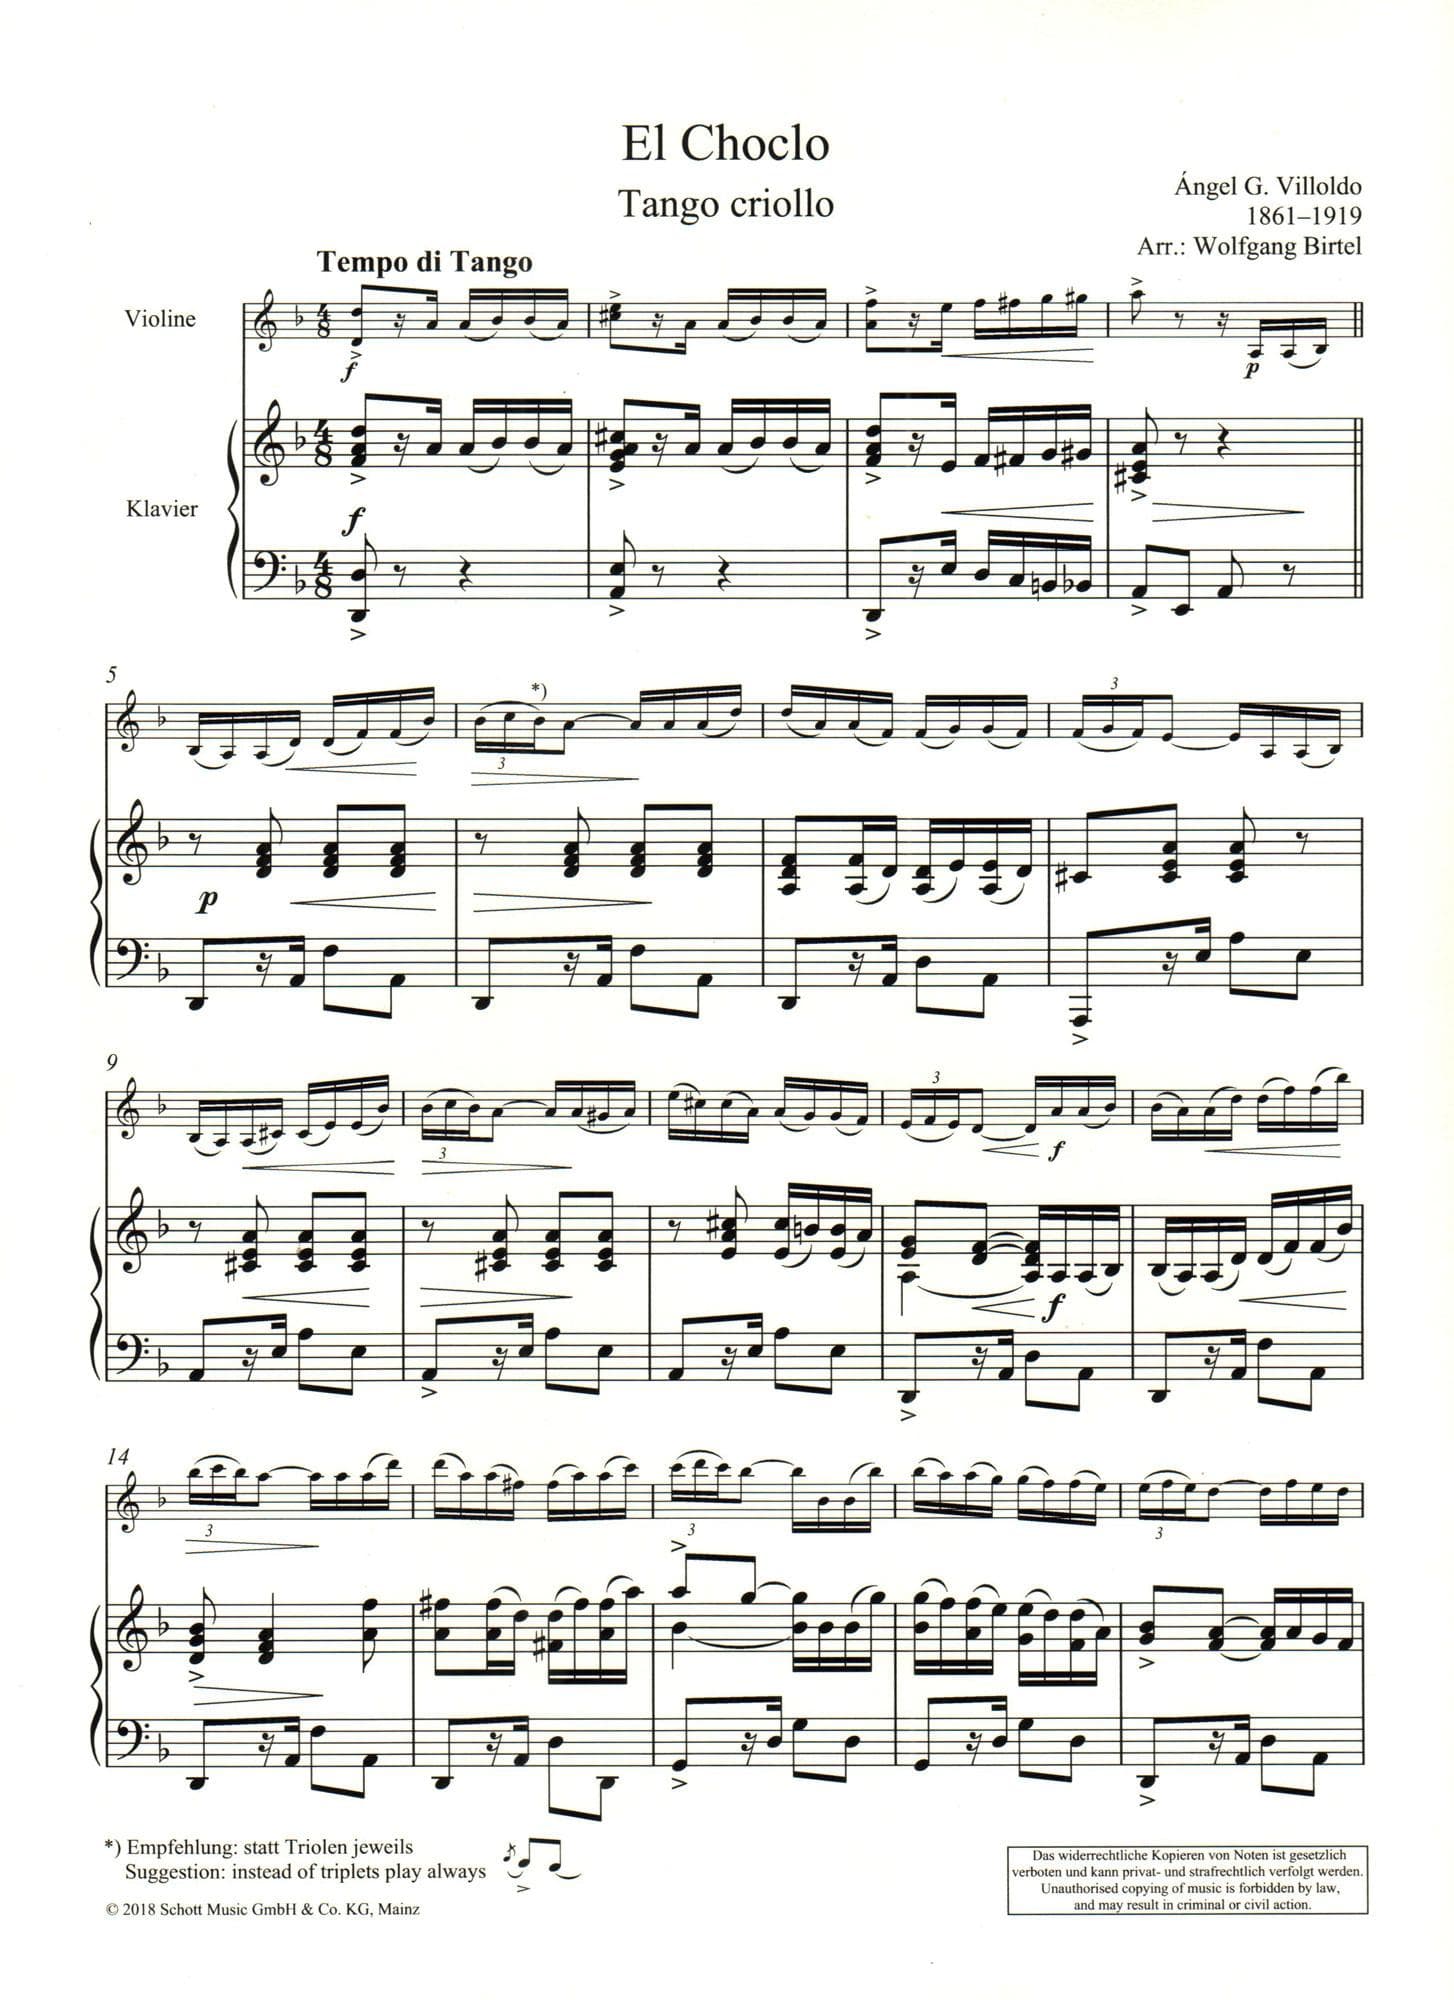 Villoldo, Angel - El Choclo (Tango Criollo) - for Violin and Piano - arranged by Woldgang Birtel - Schott